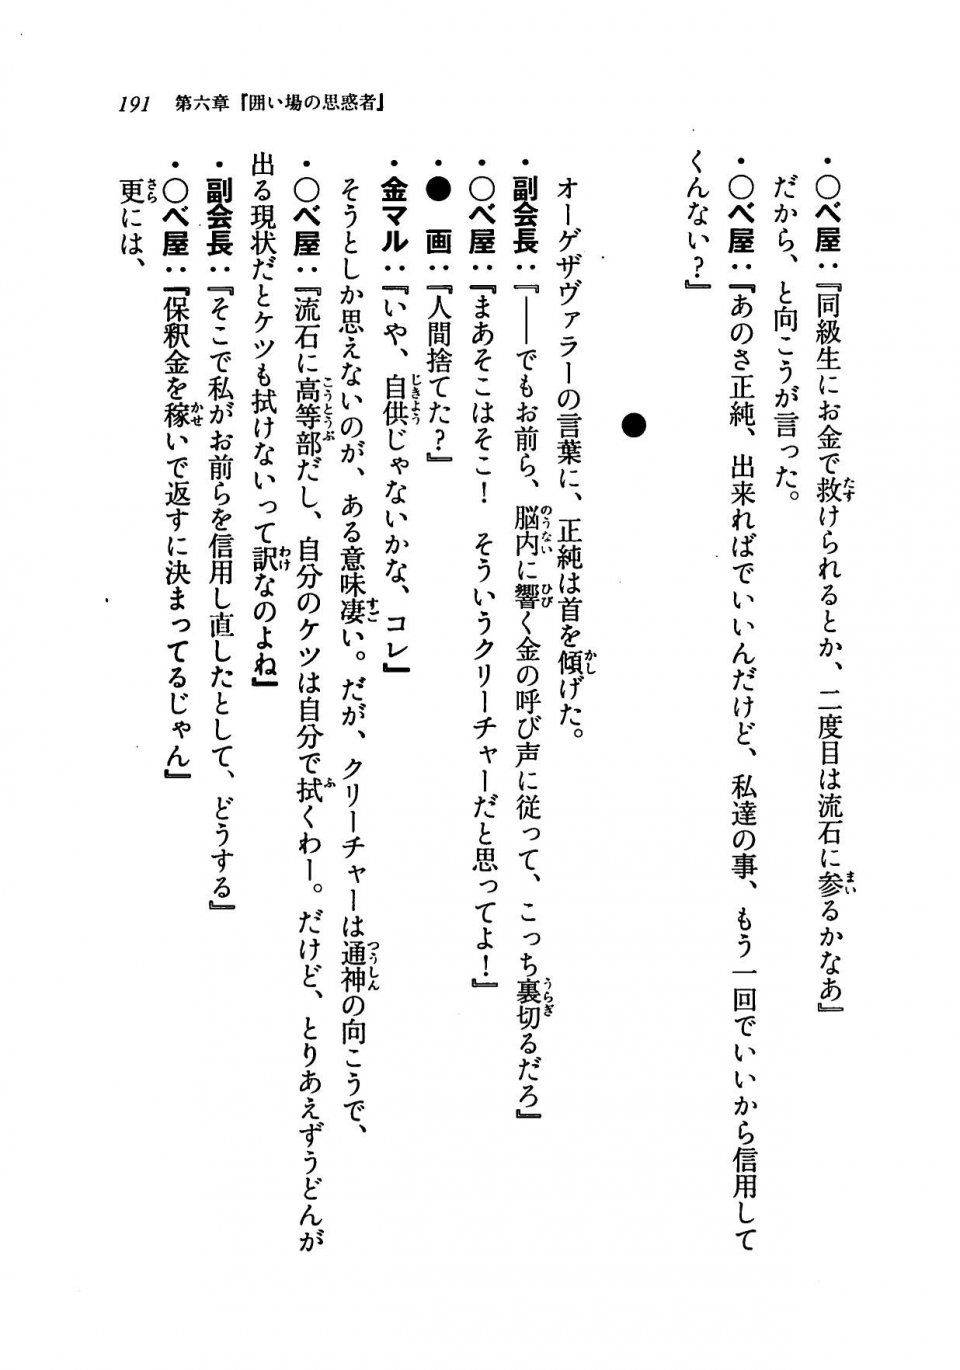 Kyoukai Senjou no Horizon LN Vol 19(8A) - Photo #191